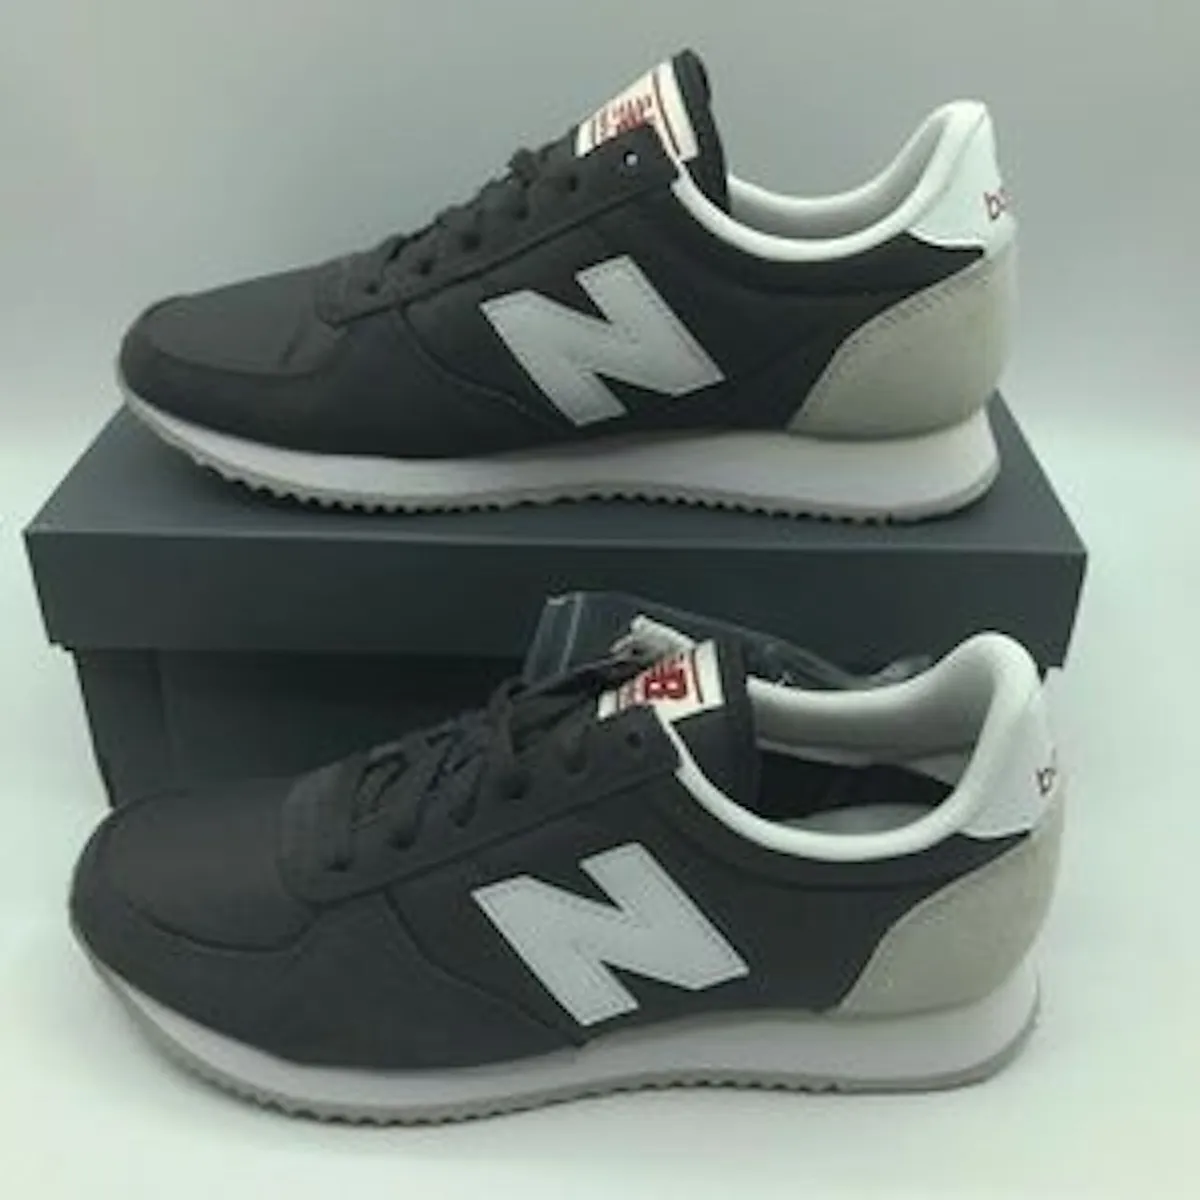 Popa empujoncito constantemente New Balance 220 Classic Sneakers Womens Size 5 | eBay